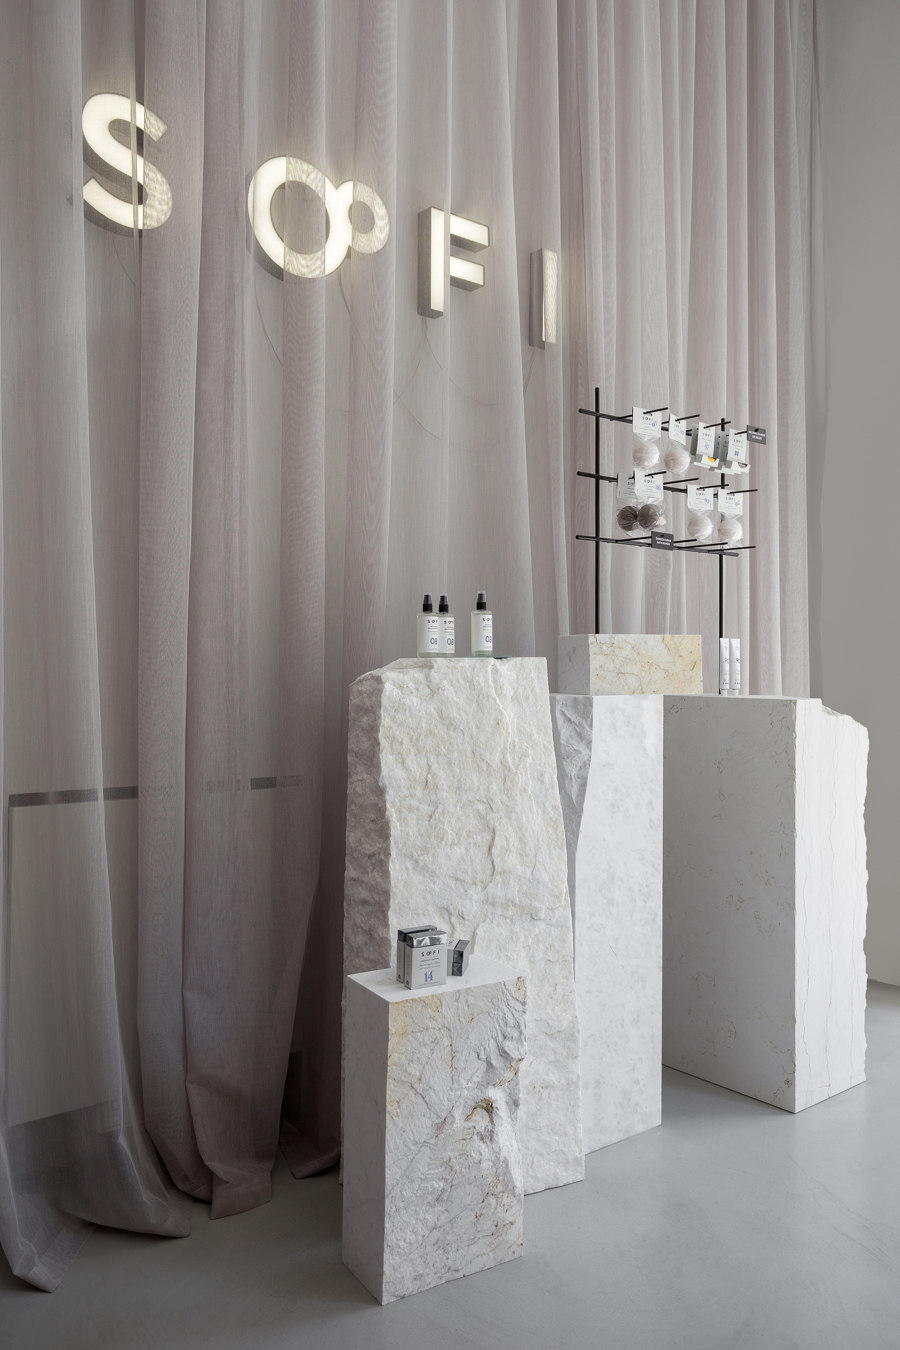 SOFI Natural Cosmetics Shop by Studio AUTORI | Shop interiors